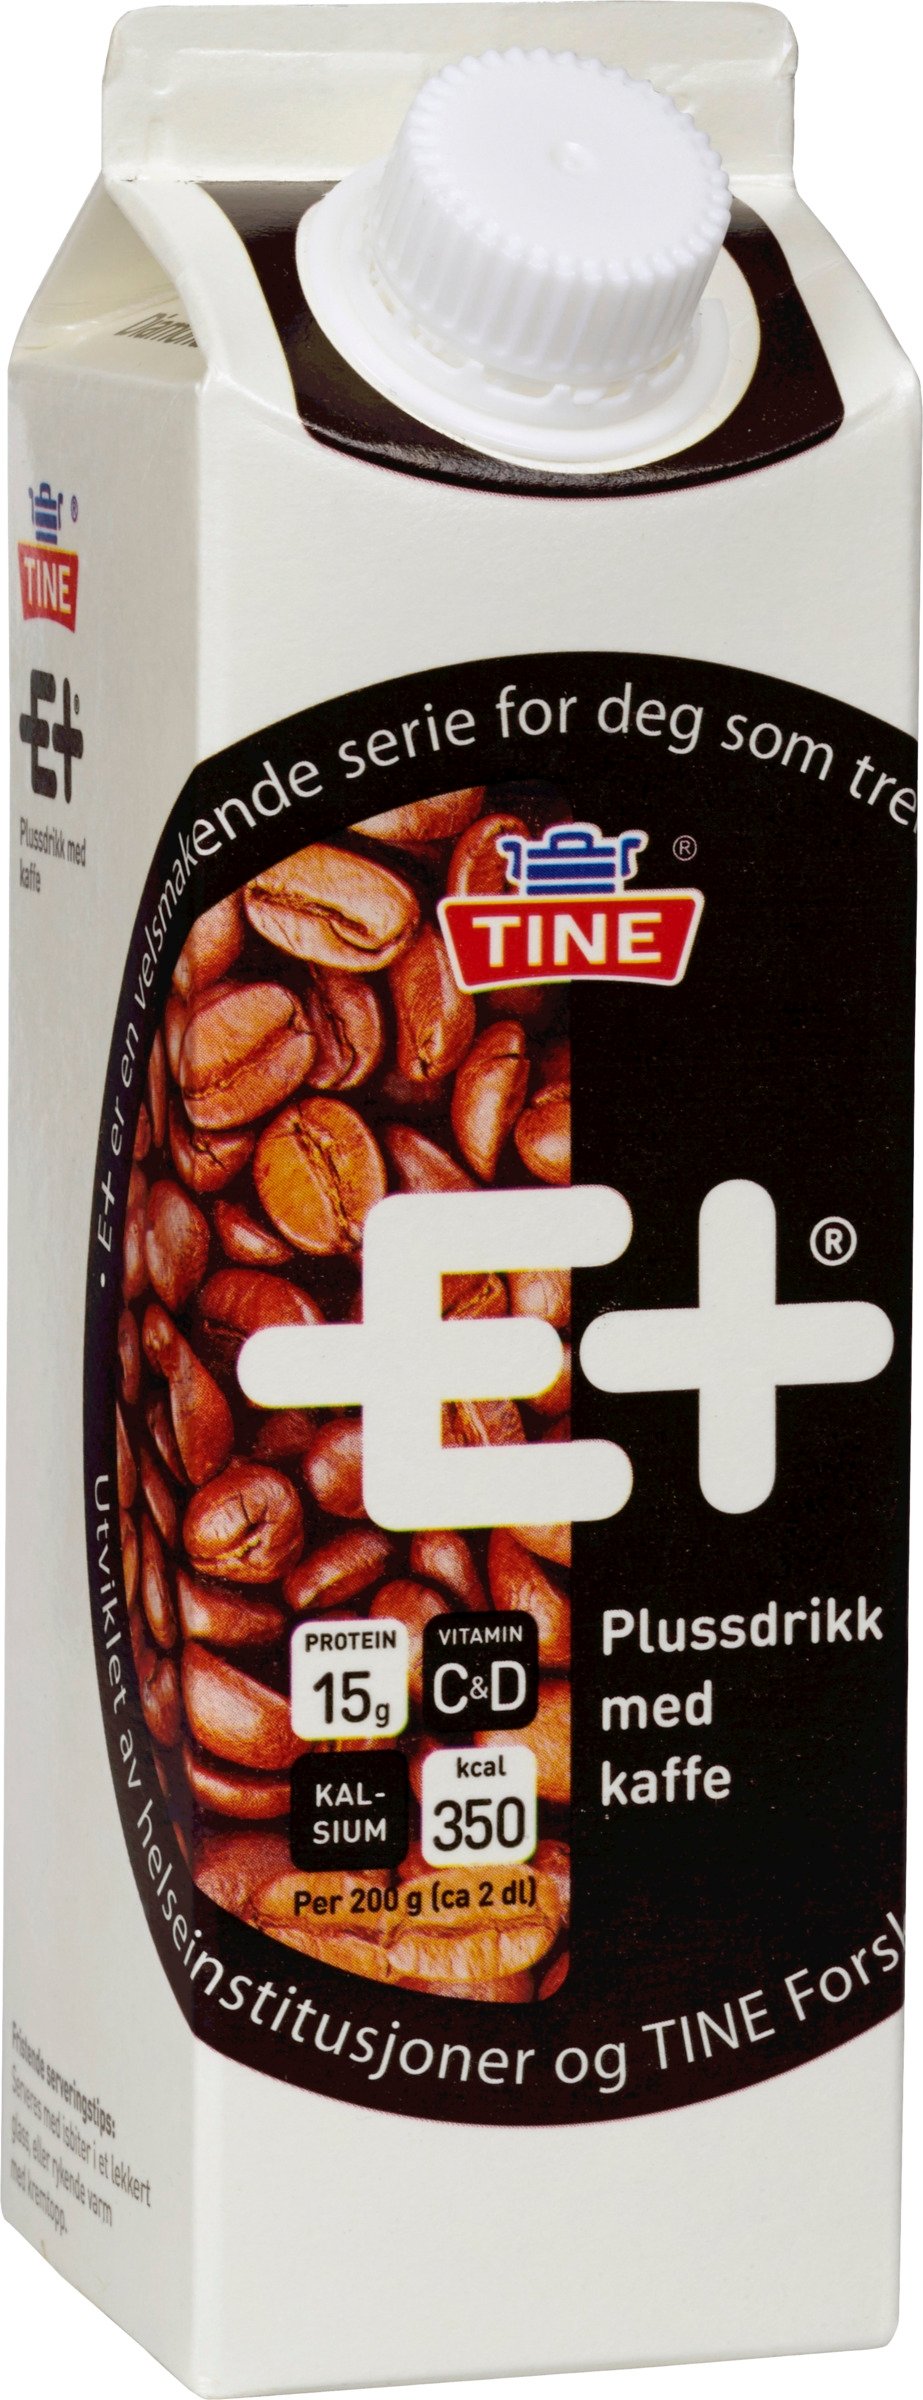 E+plussdrikk kaffe   0,5l